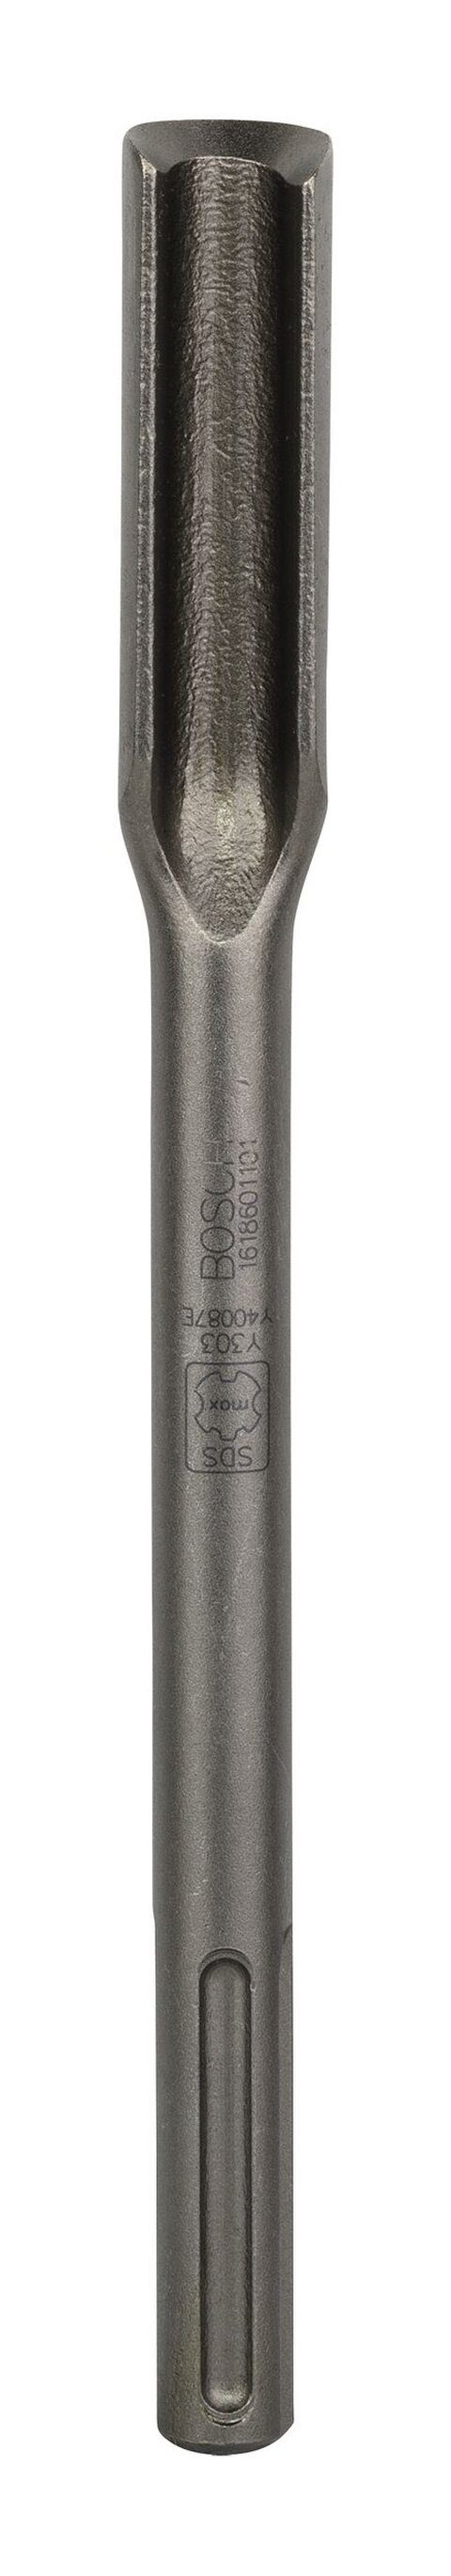 max-Aufnahme Hohlmeißel Universalbohrer, 26 x - mm mit 300 BOSCH SDS